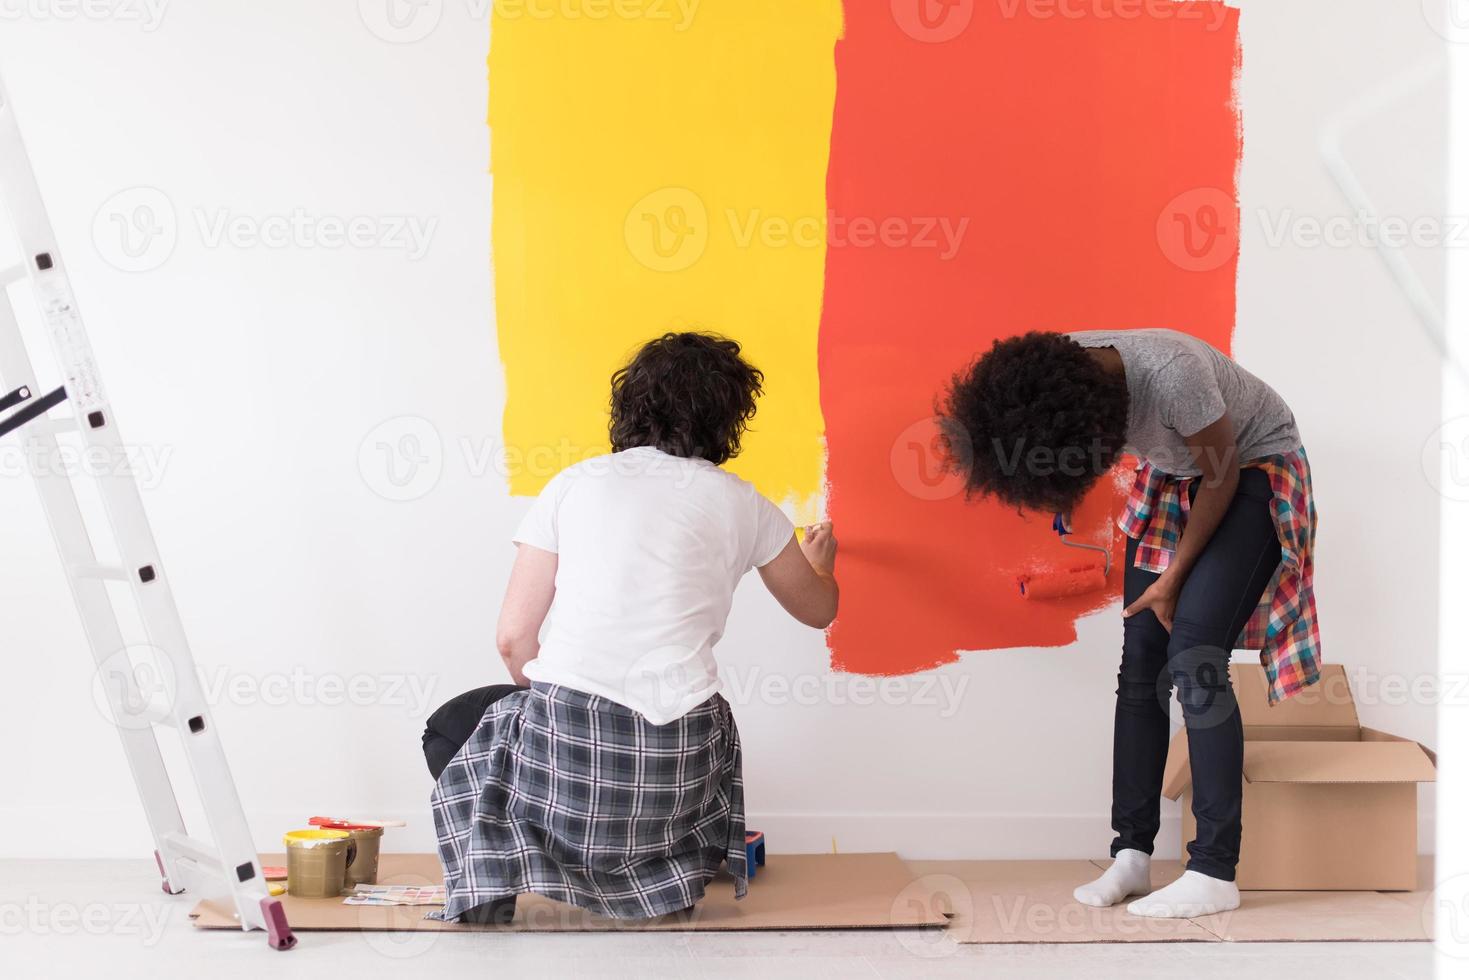 casal multiétnico pintando parede interior foto